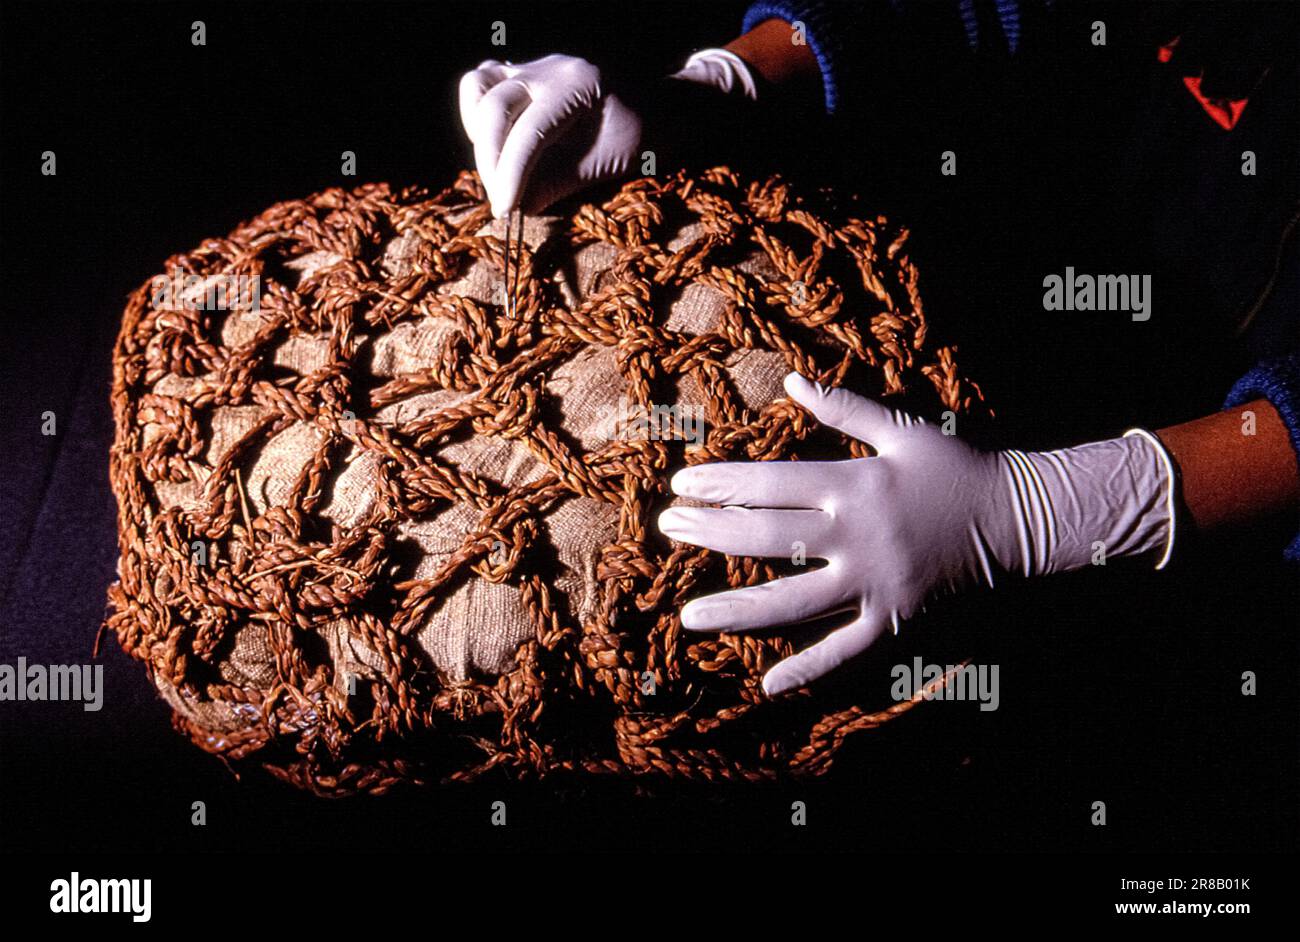 Lima Puruchuco - Un paquete de momia encerrado dentro de una red, encontrado en Puruchuco por el equipo del Prof. Guillermo Cock, en la foto con sckeleton- toma en el año 2000s Perù Foto de stock